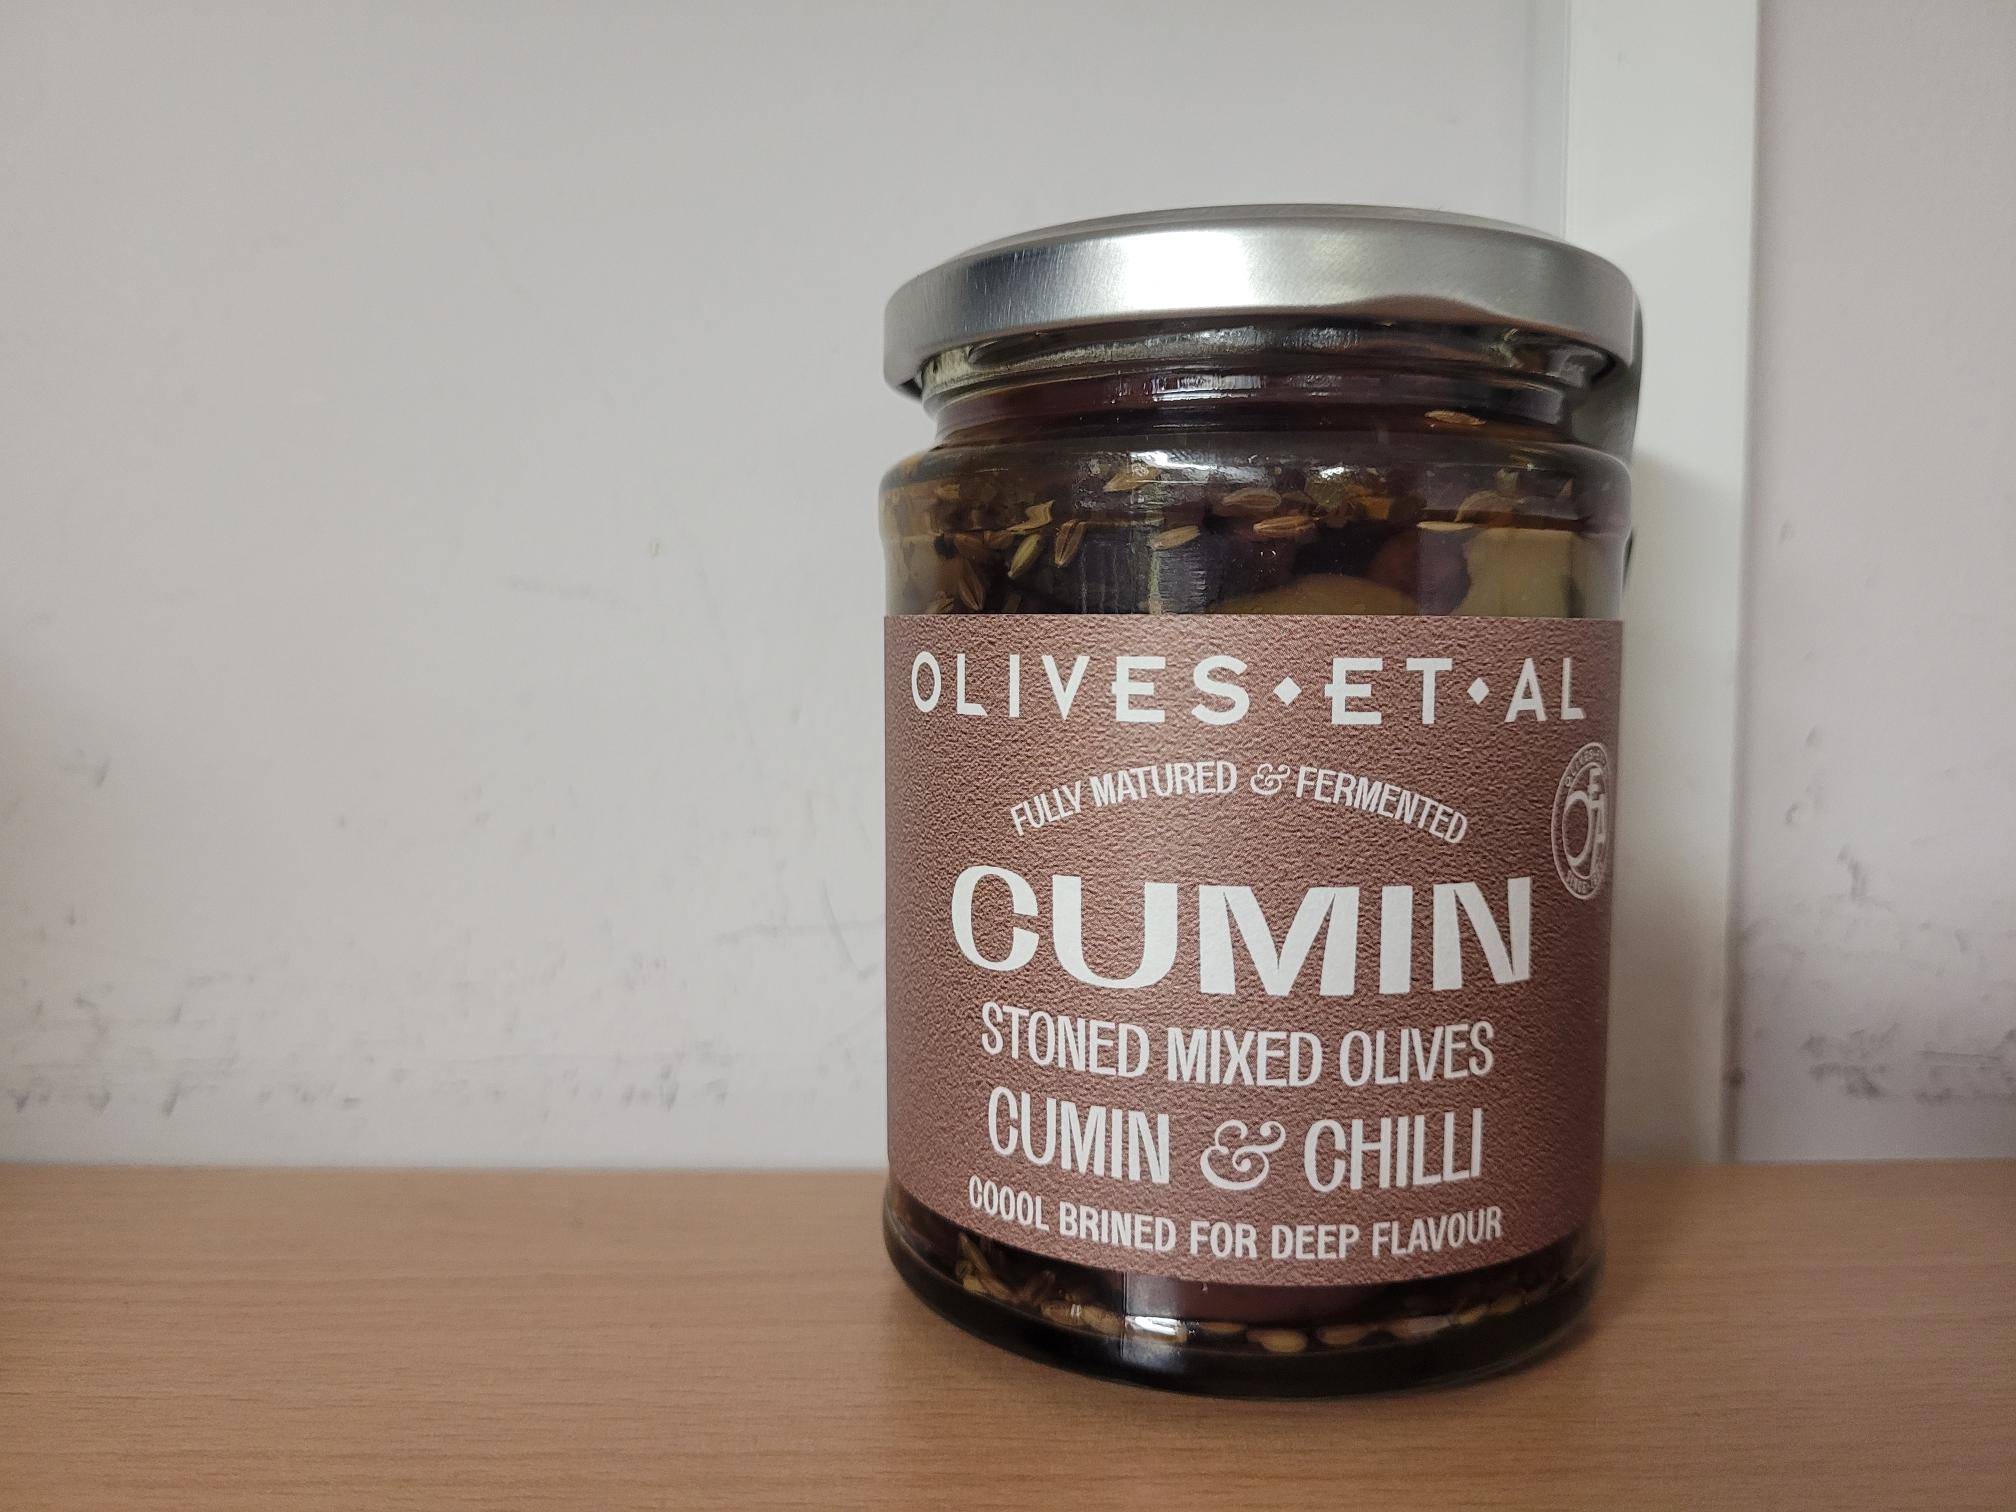 Olives et Al Cumin & Chilli Olives